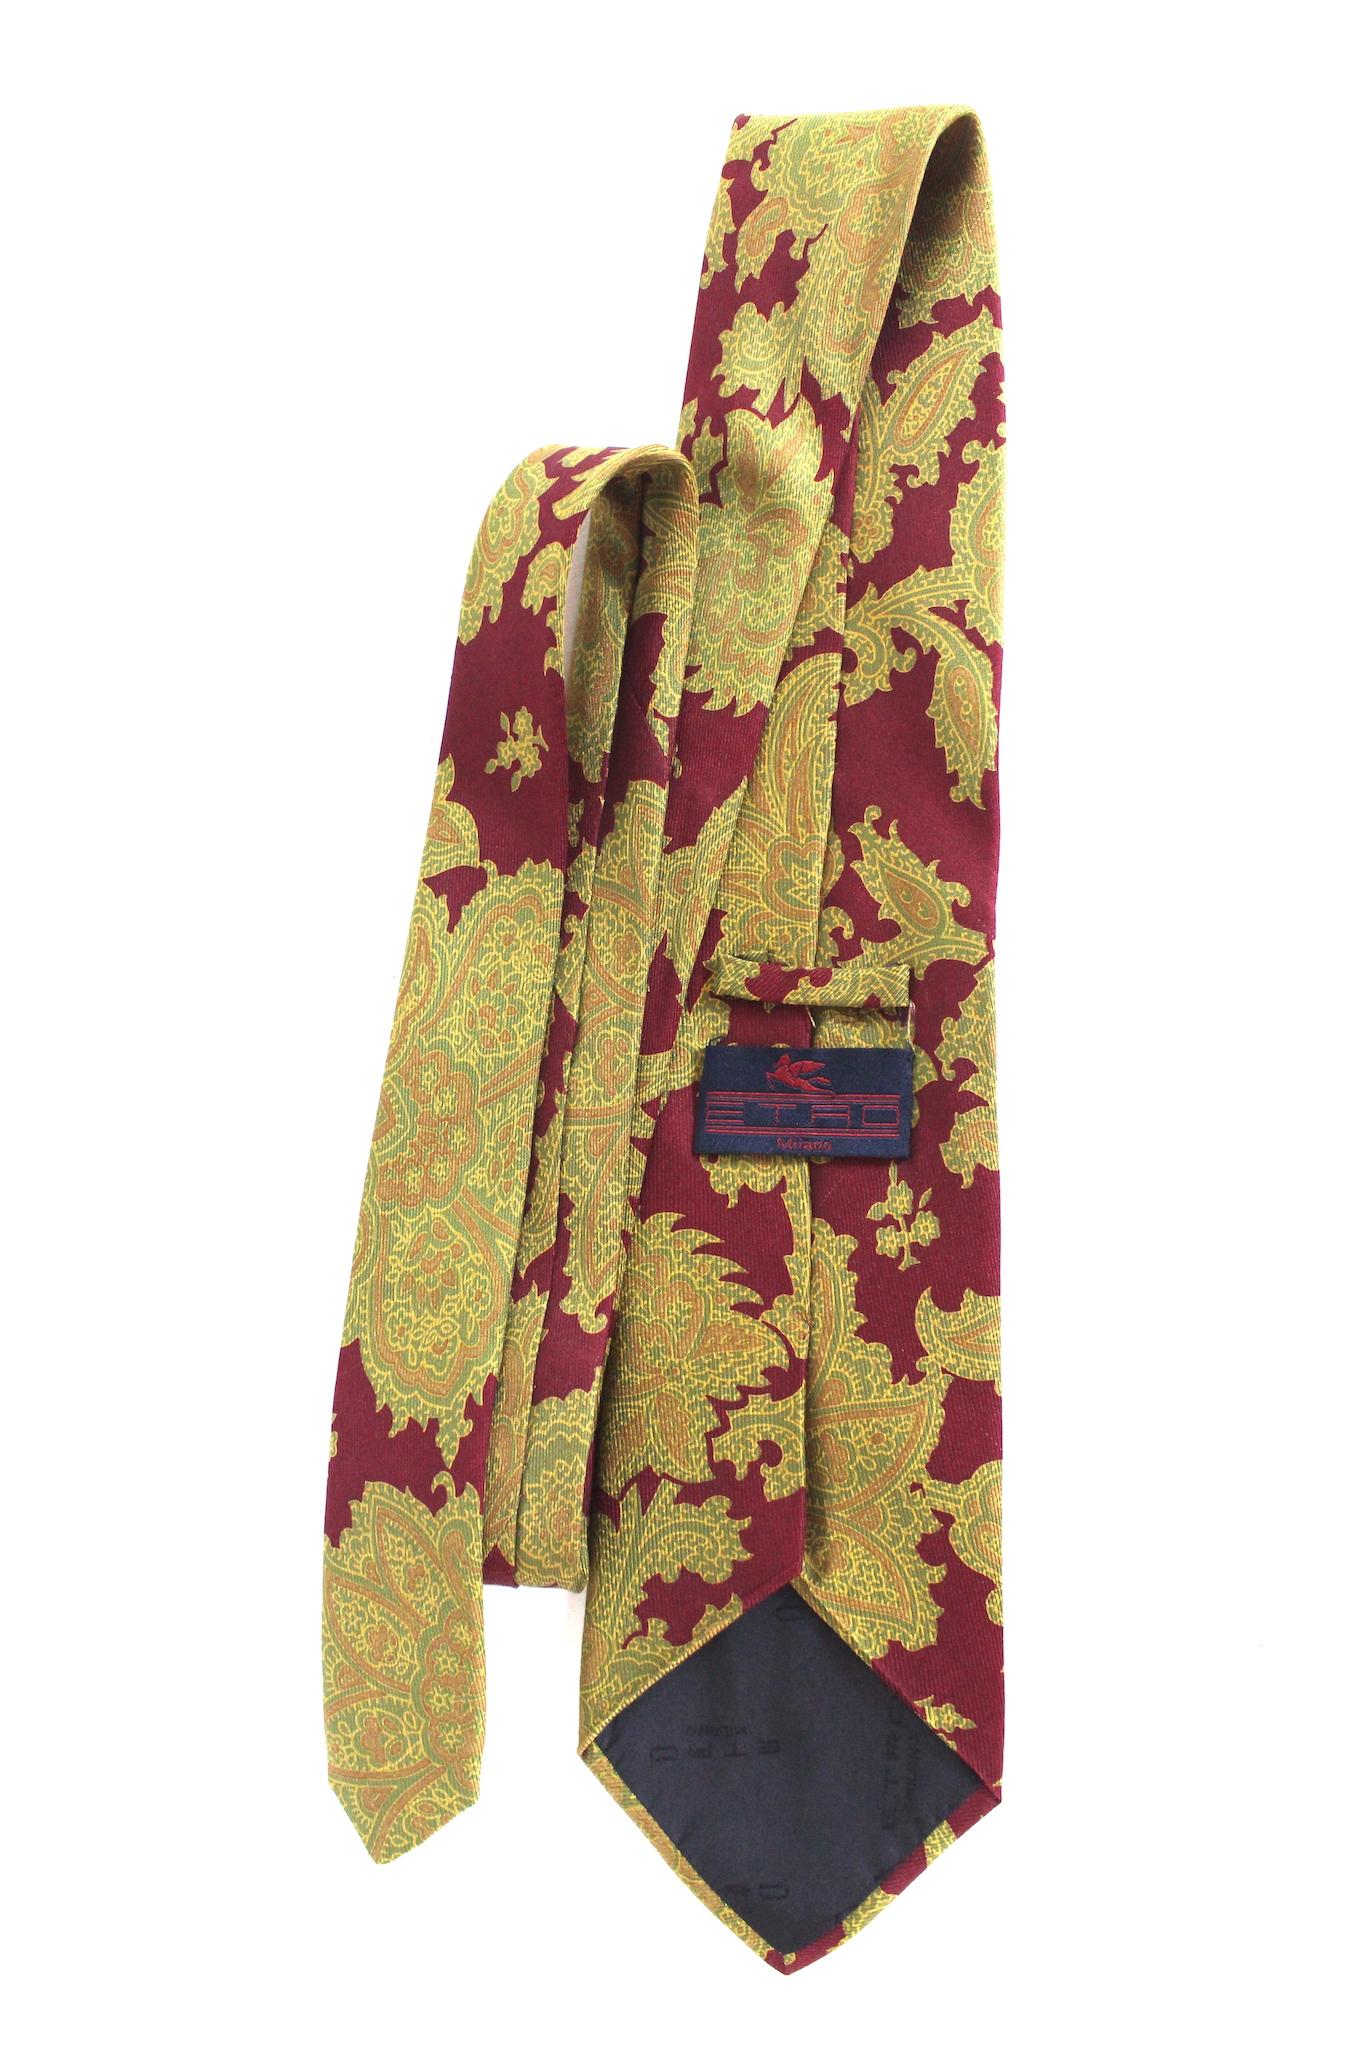 Cravate Etro vintage des années 90. Couleur rouge avec motifs floraux beiges, 100% soie. Fabriqué en Italie.

Longueur : 145 cm
Largeur : 9,5 cm
